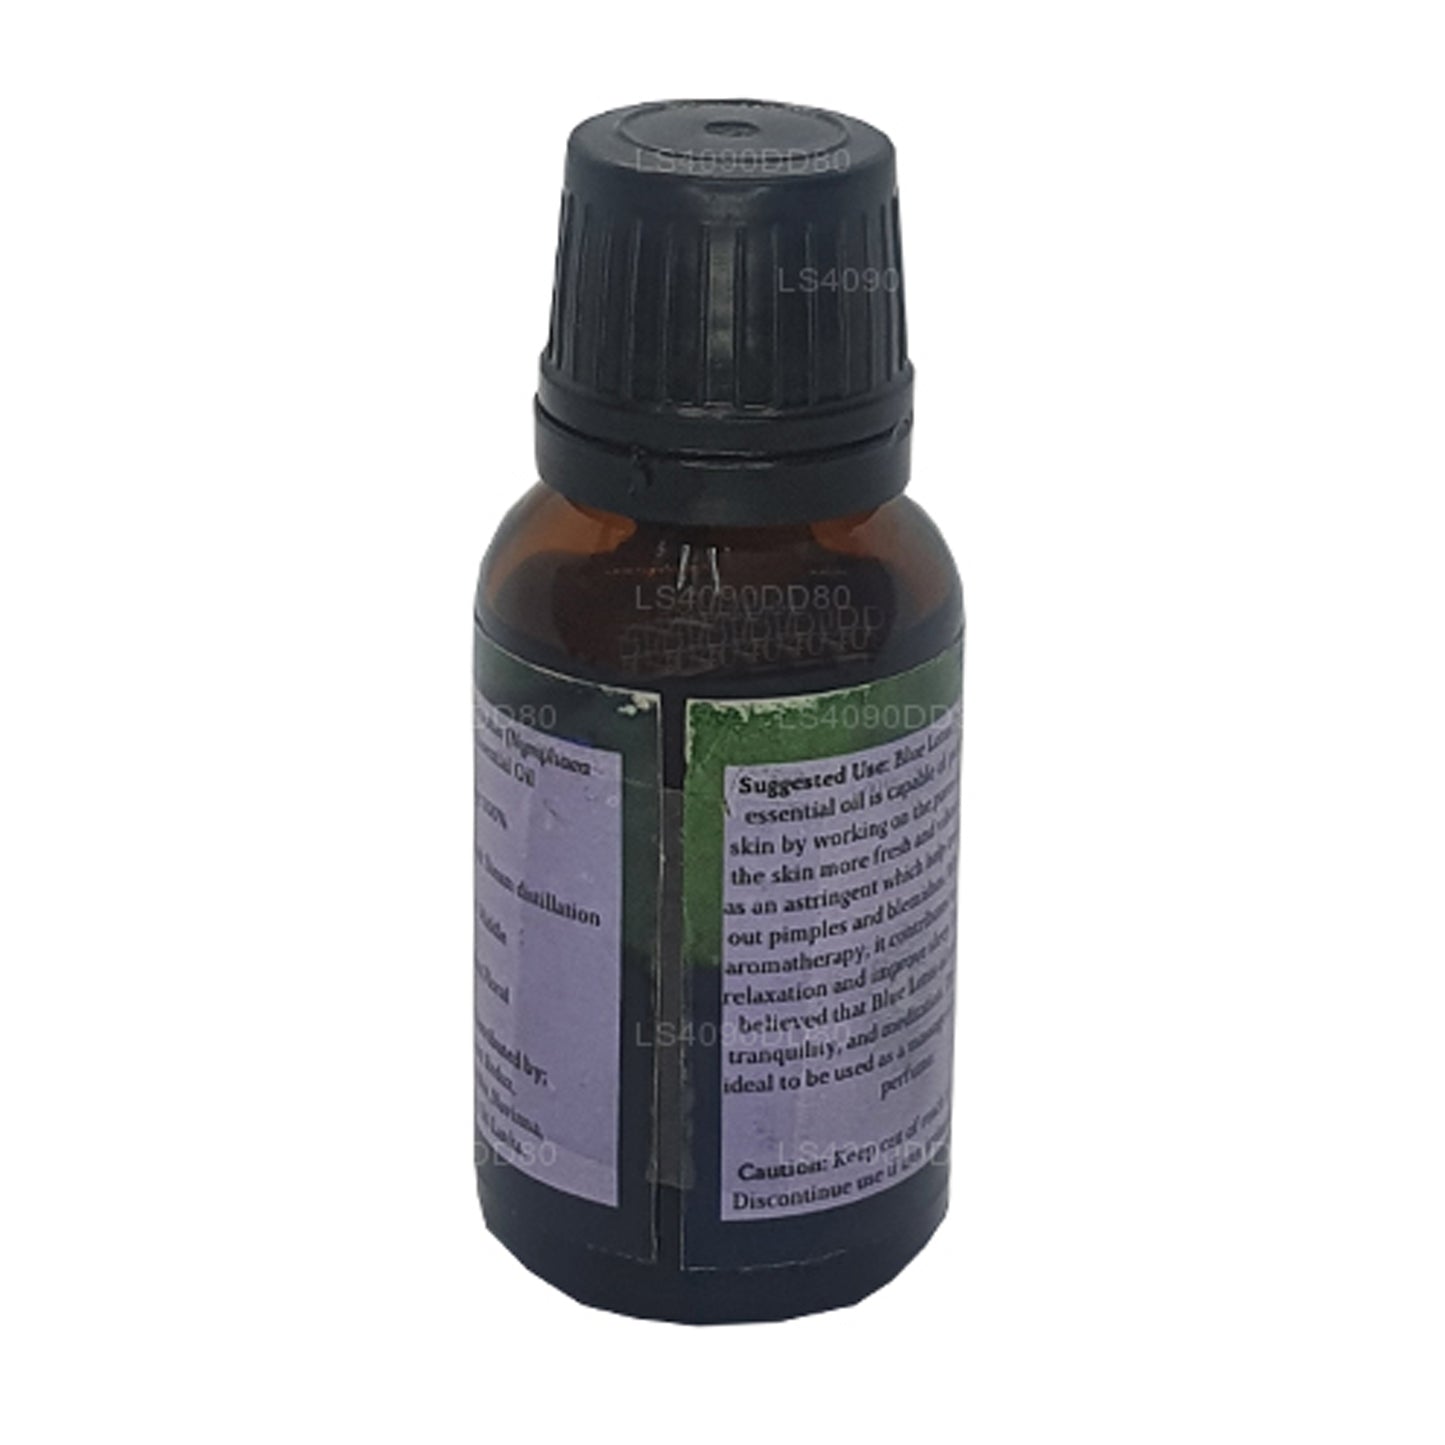 Aceite esencial de loto azul Lakpura (absoluto) (15 ml)